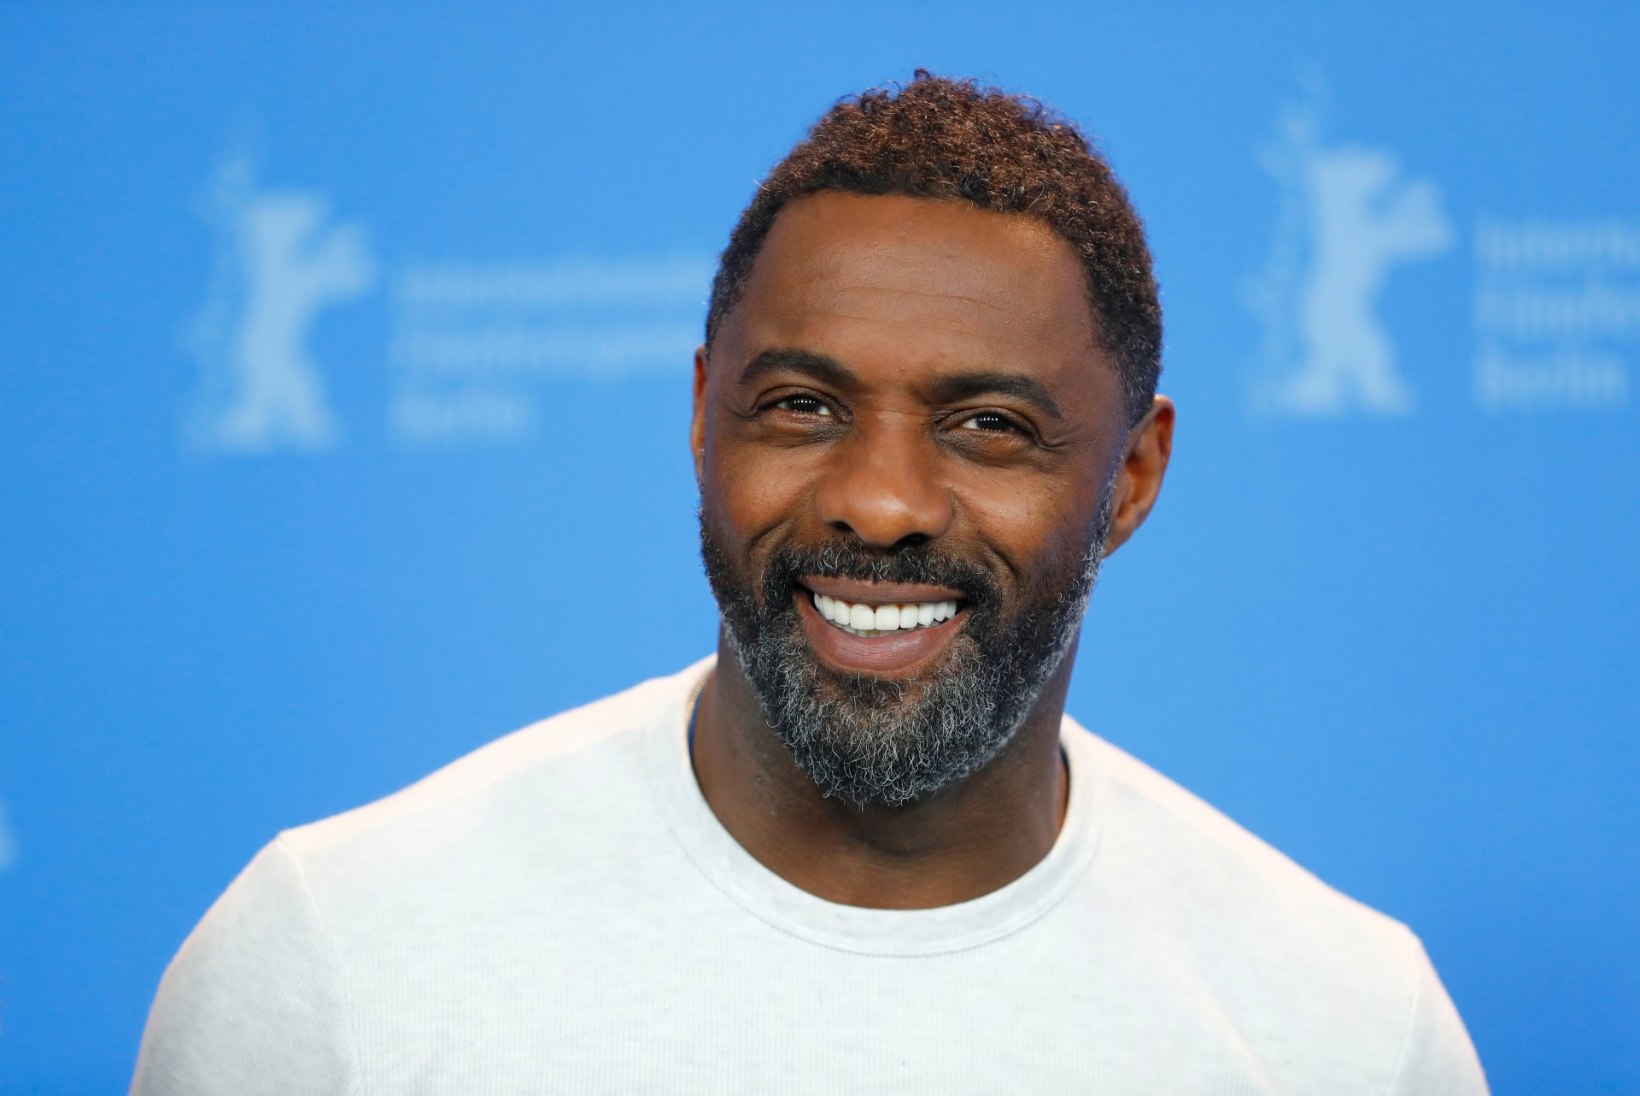 Ajakiri People kroonis Idris Elba maailma seksikaimaks meheks